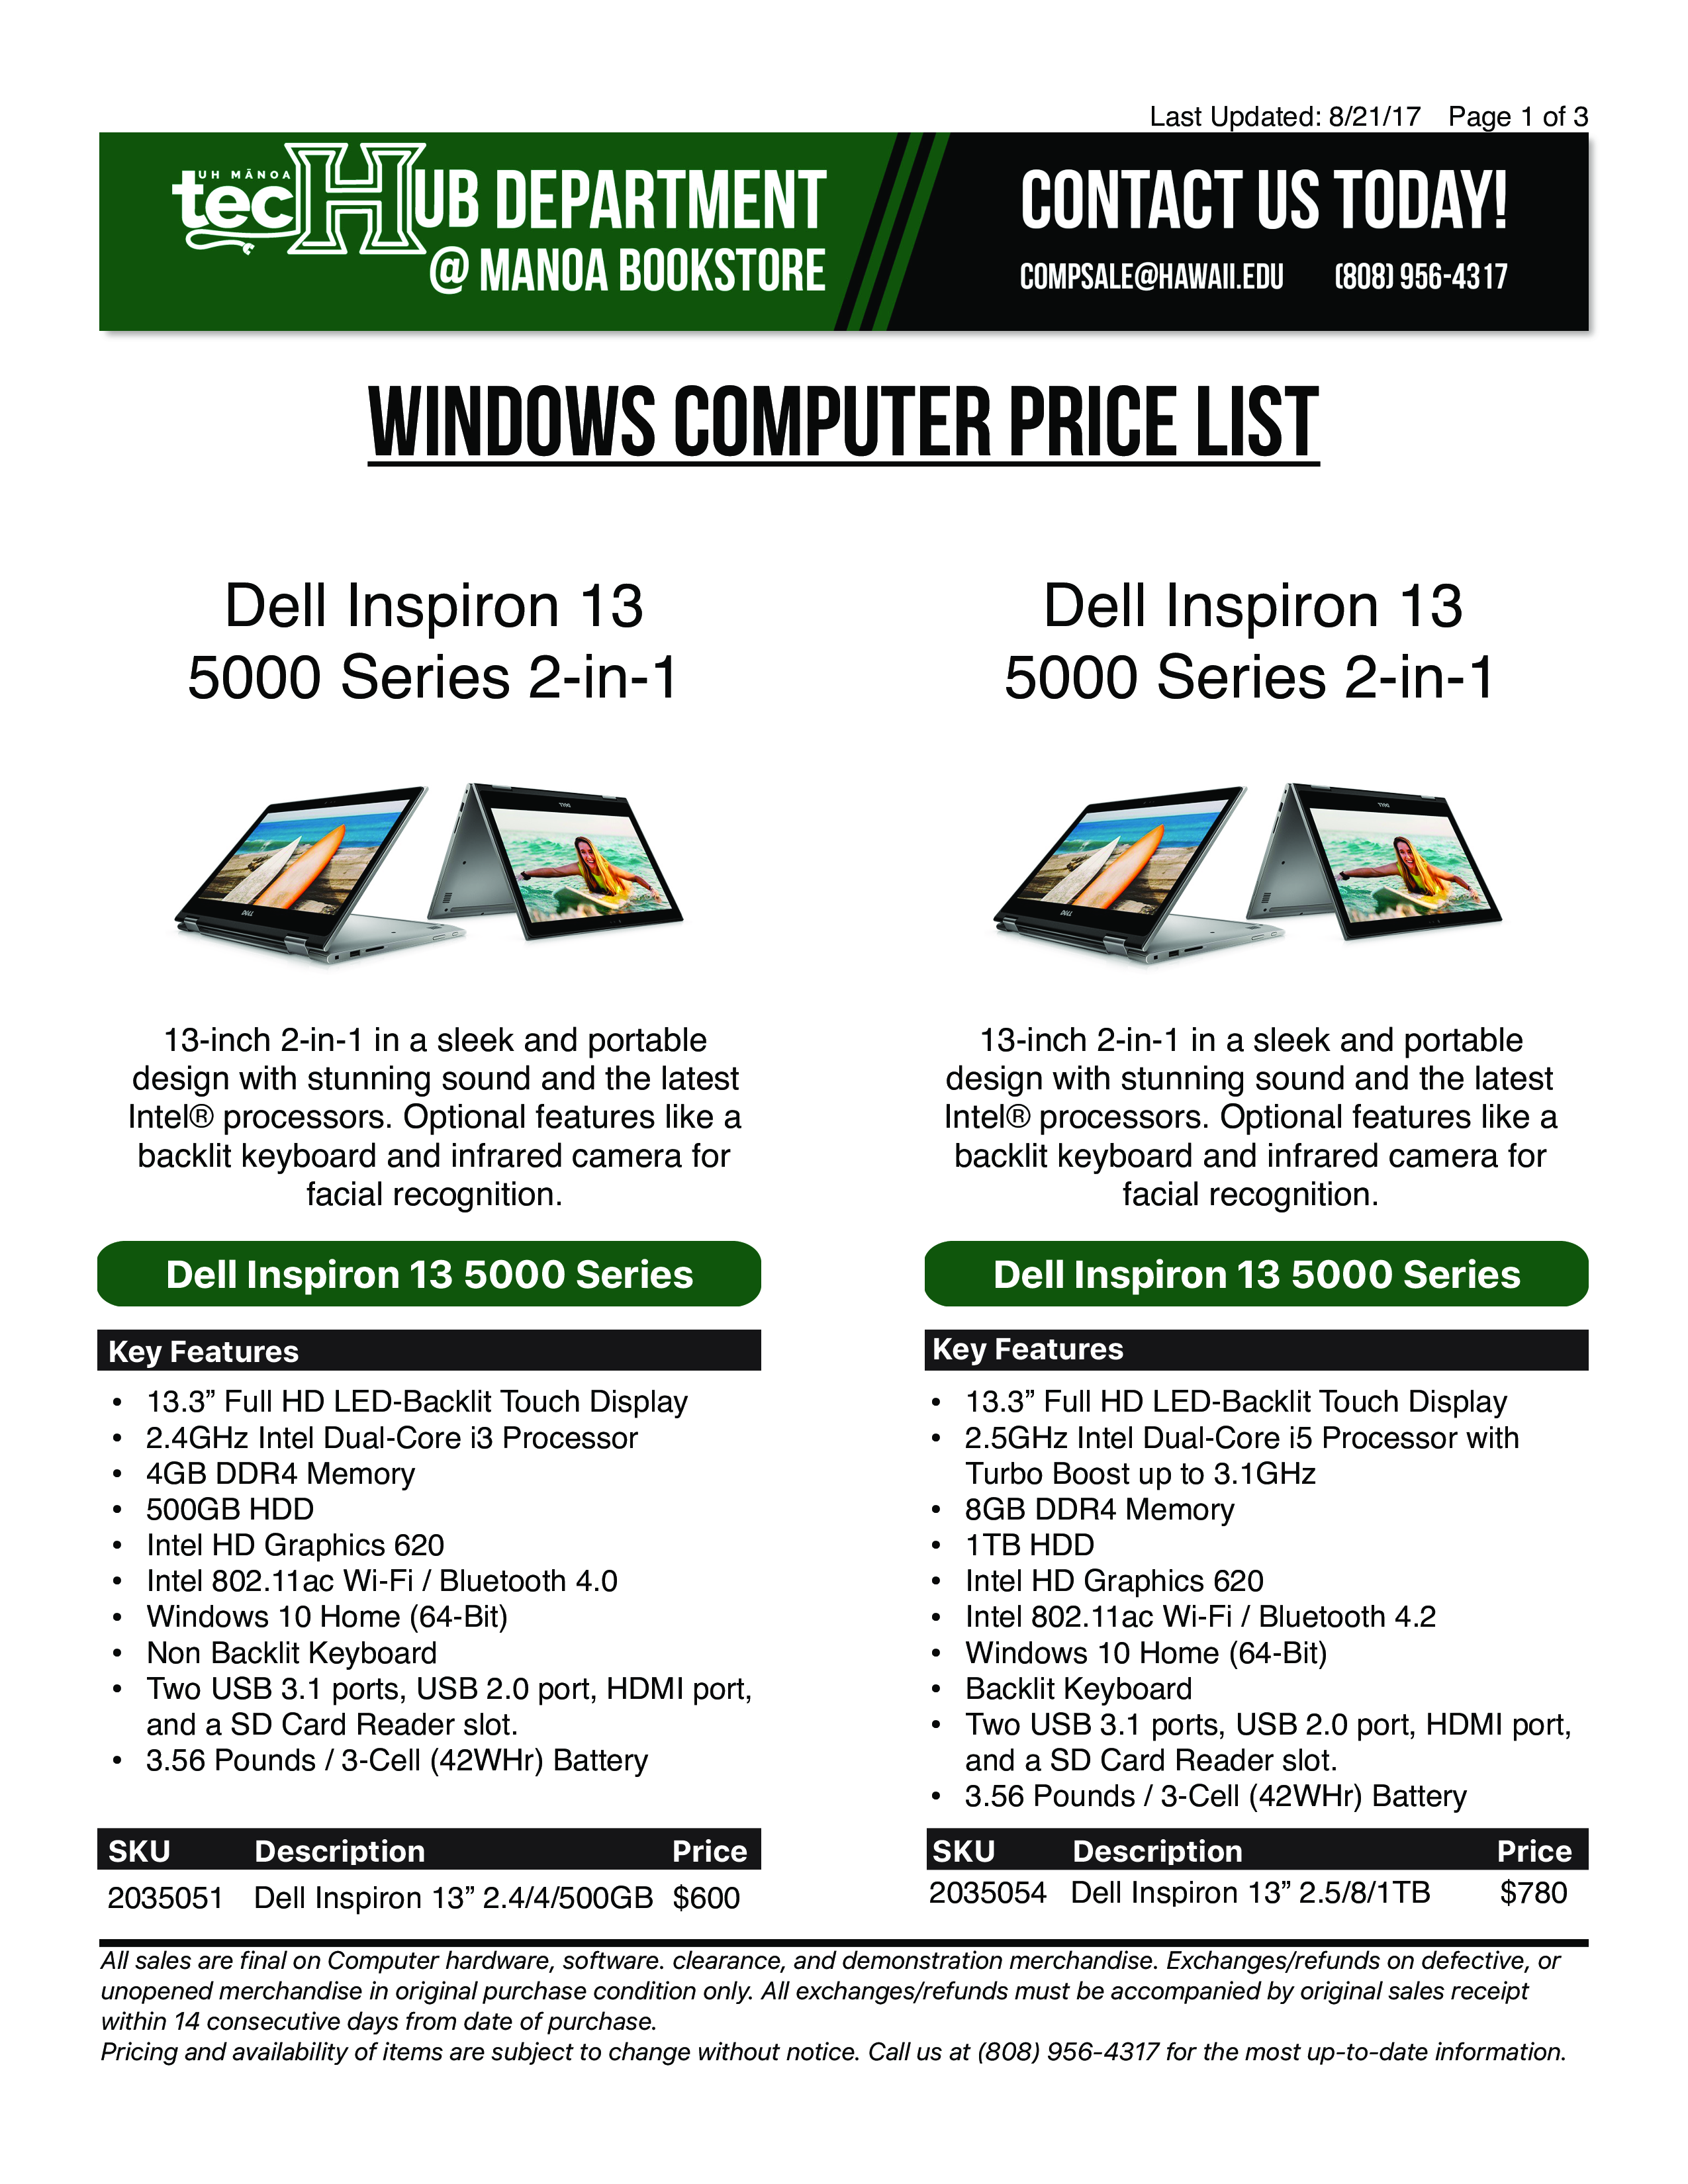 windows computers price list plantilla imagen principal